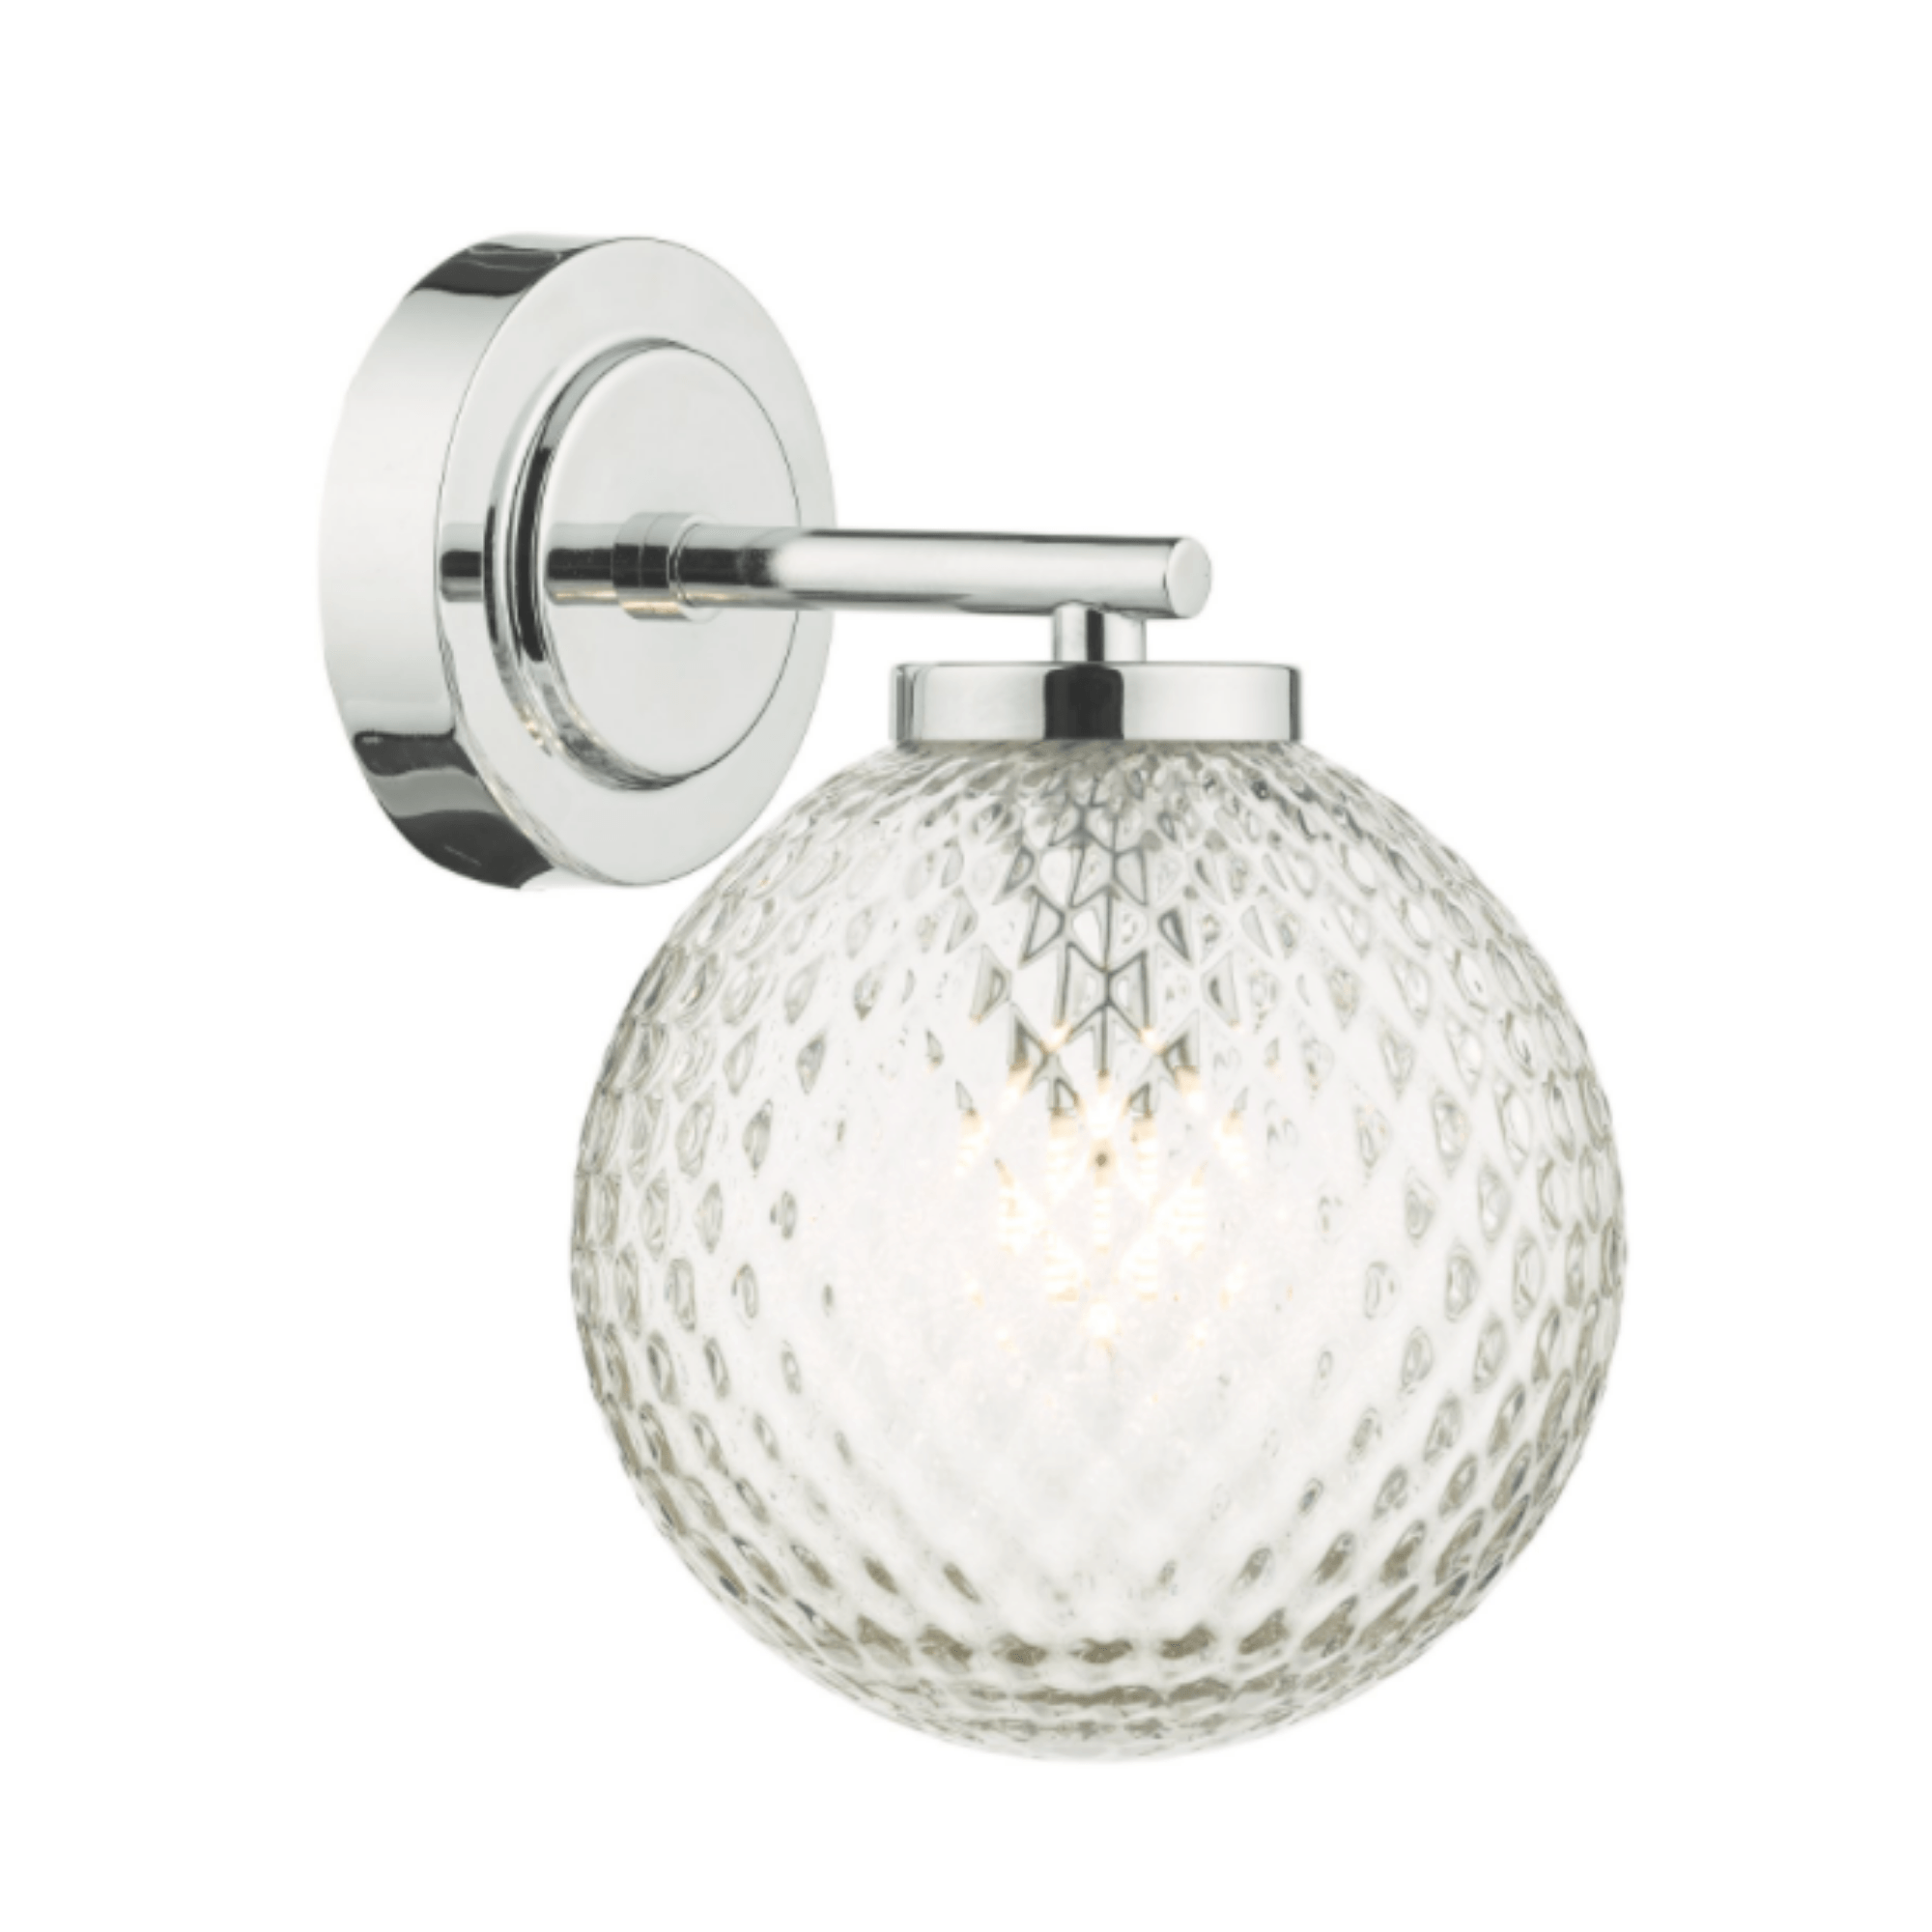 Dar Wayne | Bathroom Wall Light | Polished Chrome/Textured Glass - Cusack Lighting